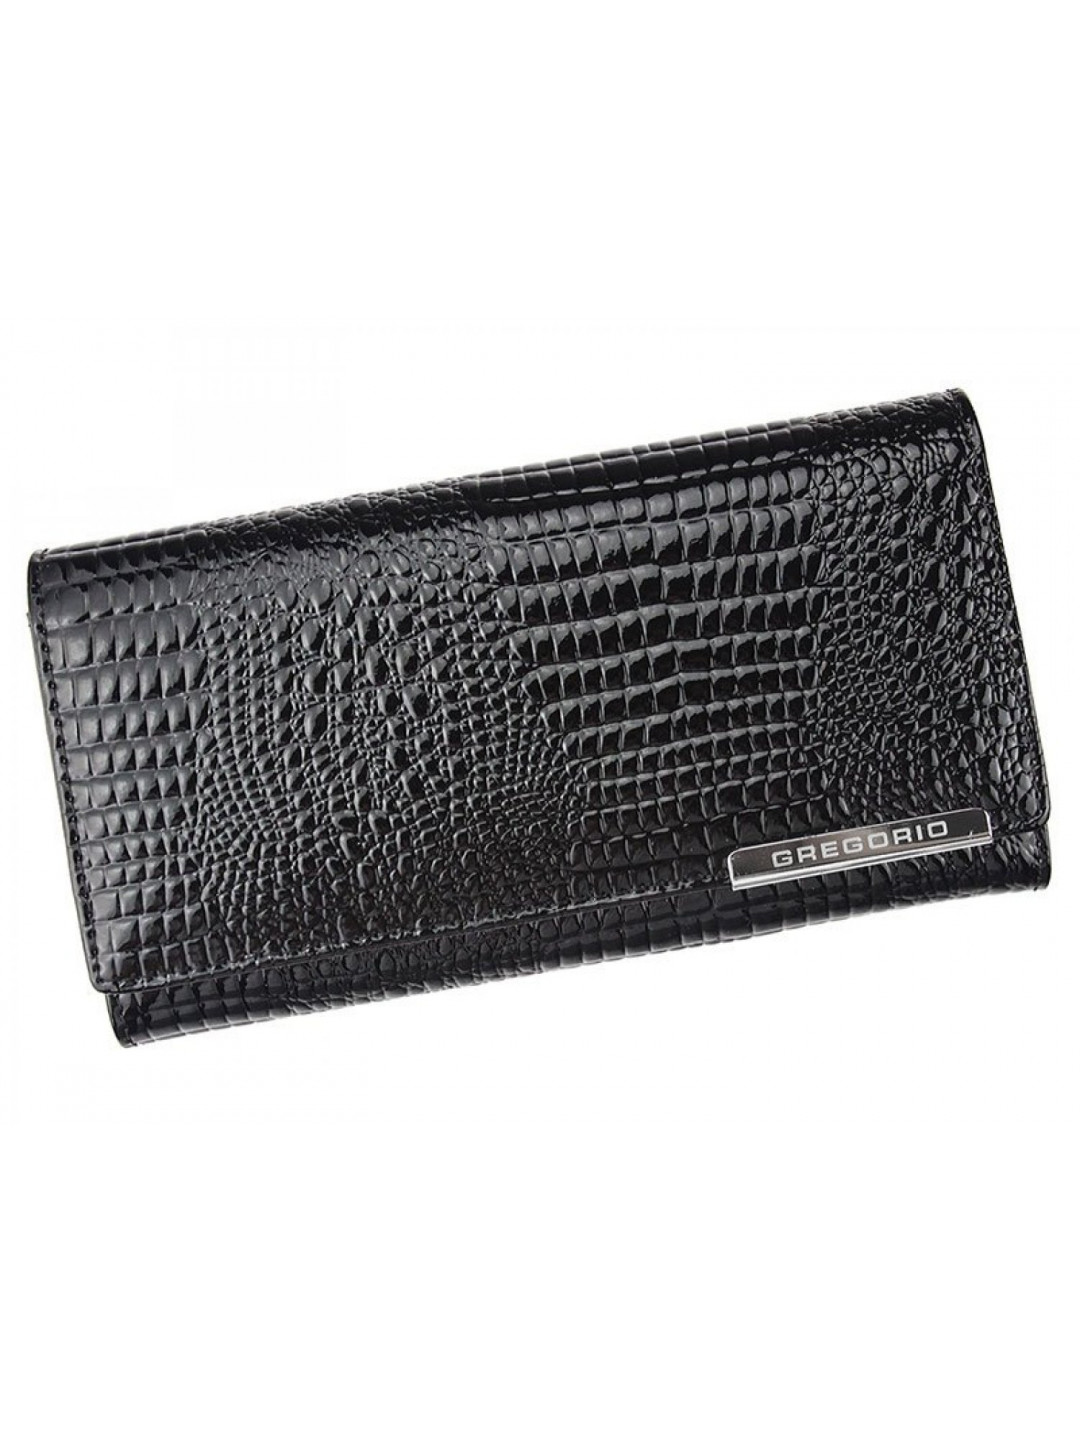 Luxusní dámská kožená peněženka s hadím vzorem Gregorio Sissi černá